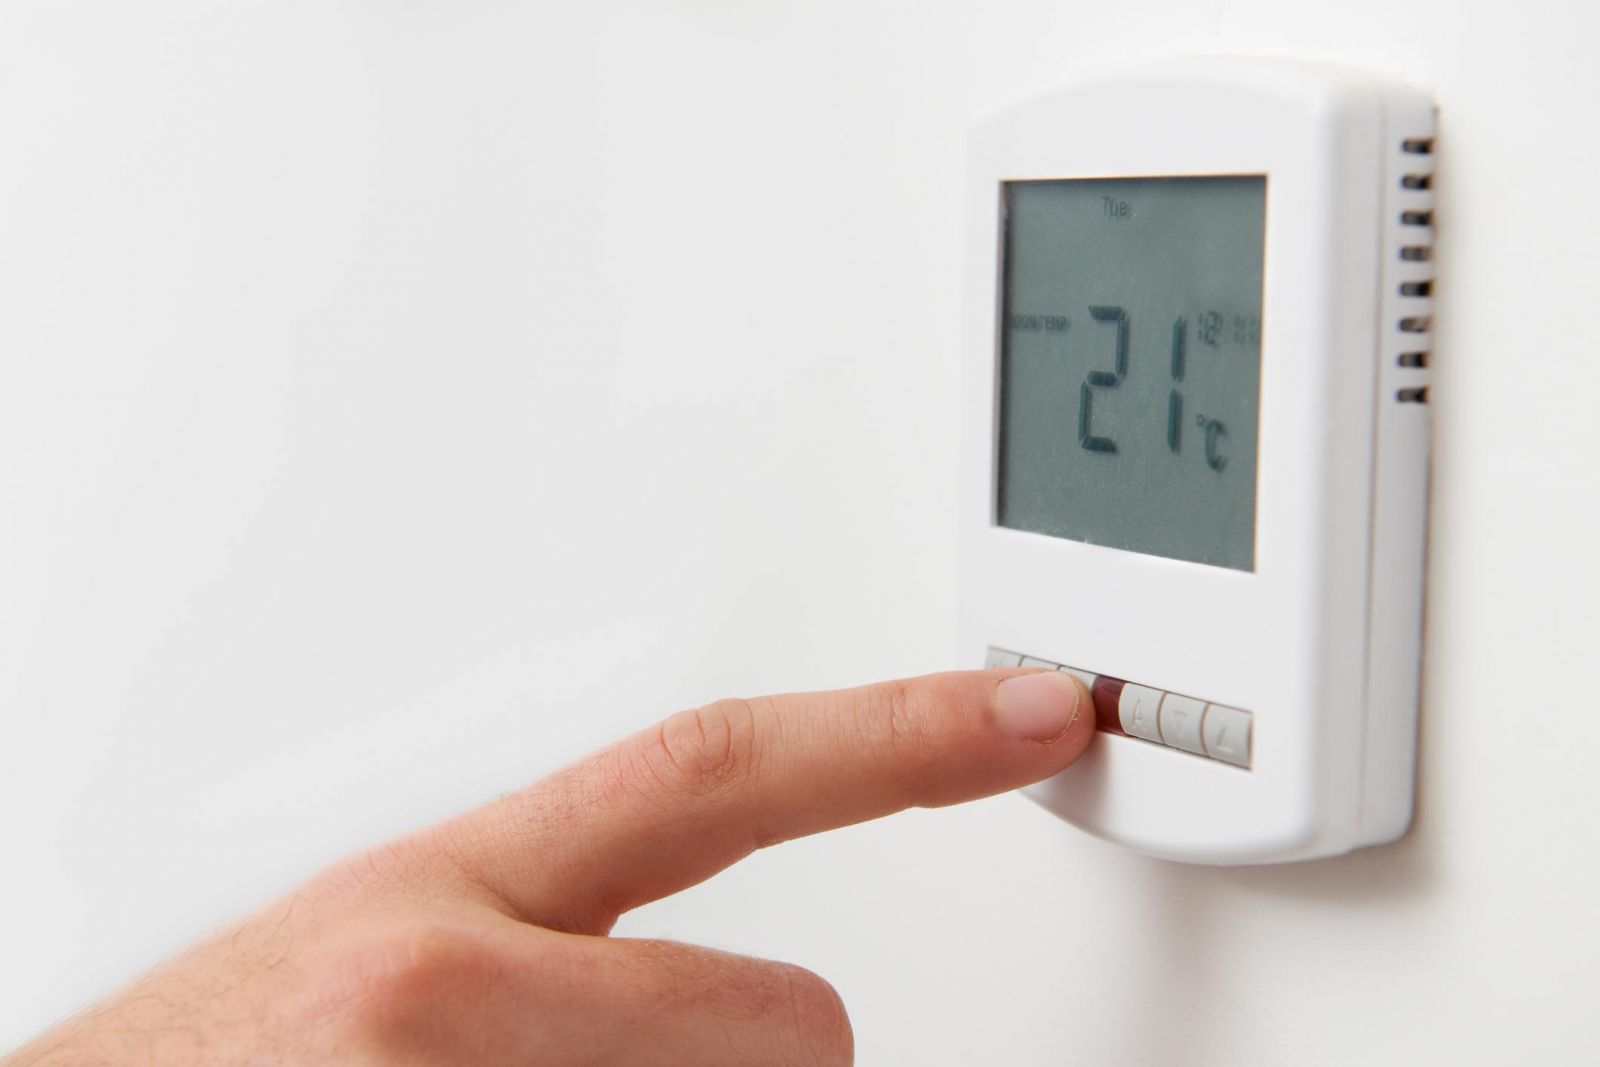 ako odstrániť nedostatky termostatu bez opravára